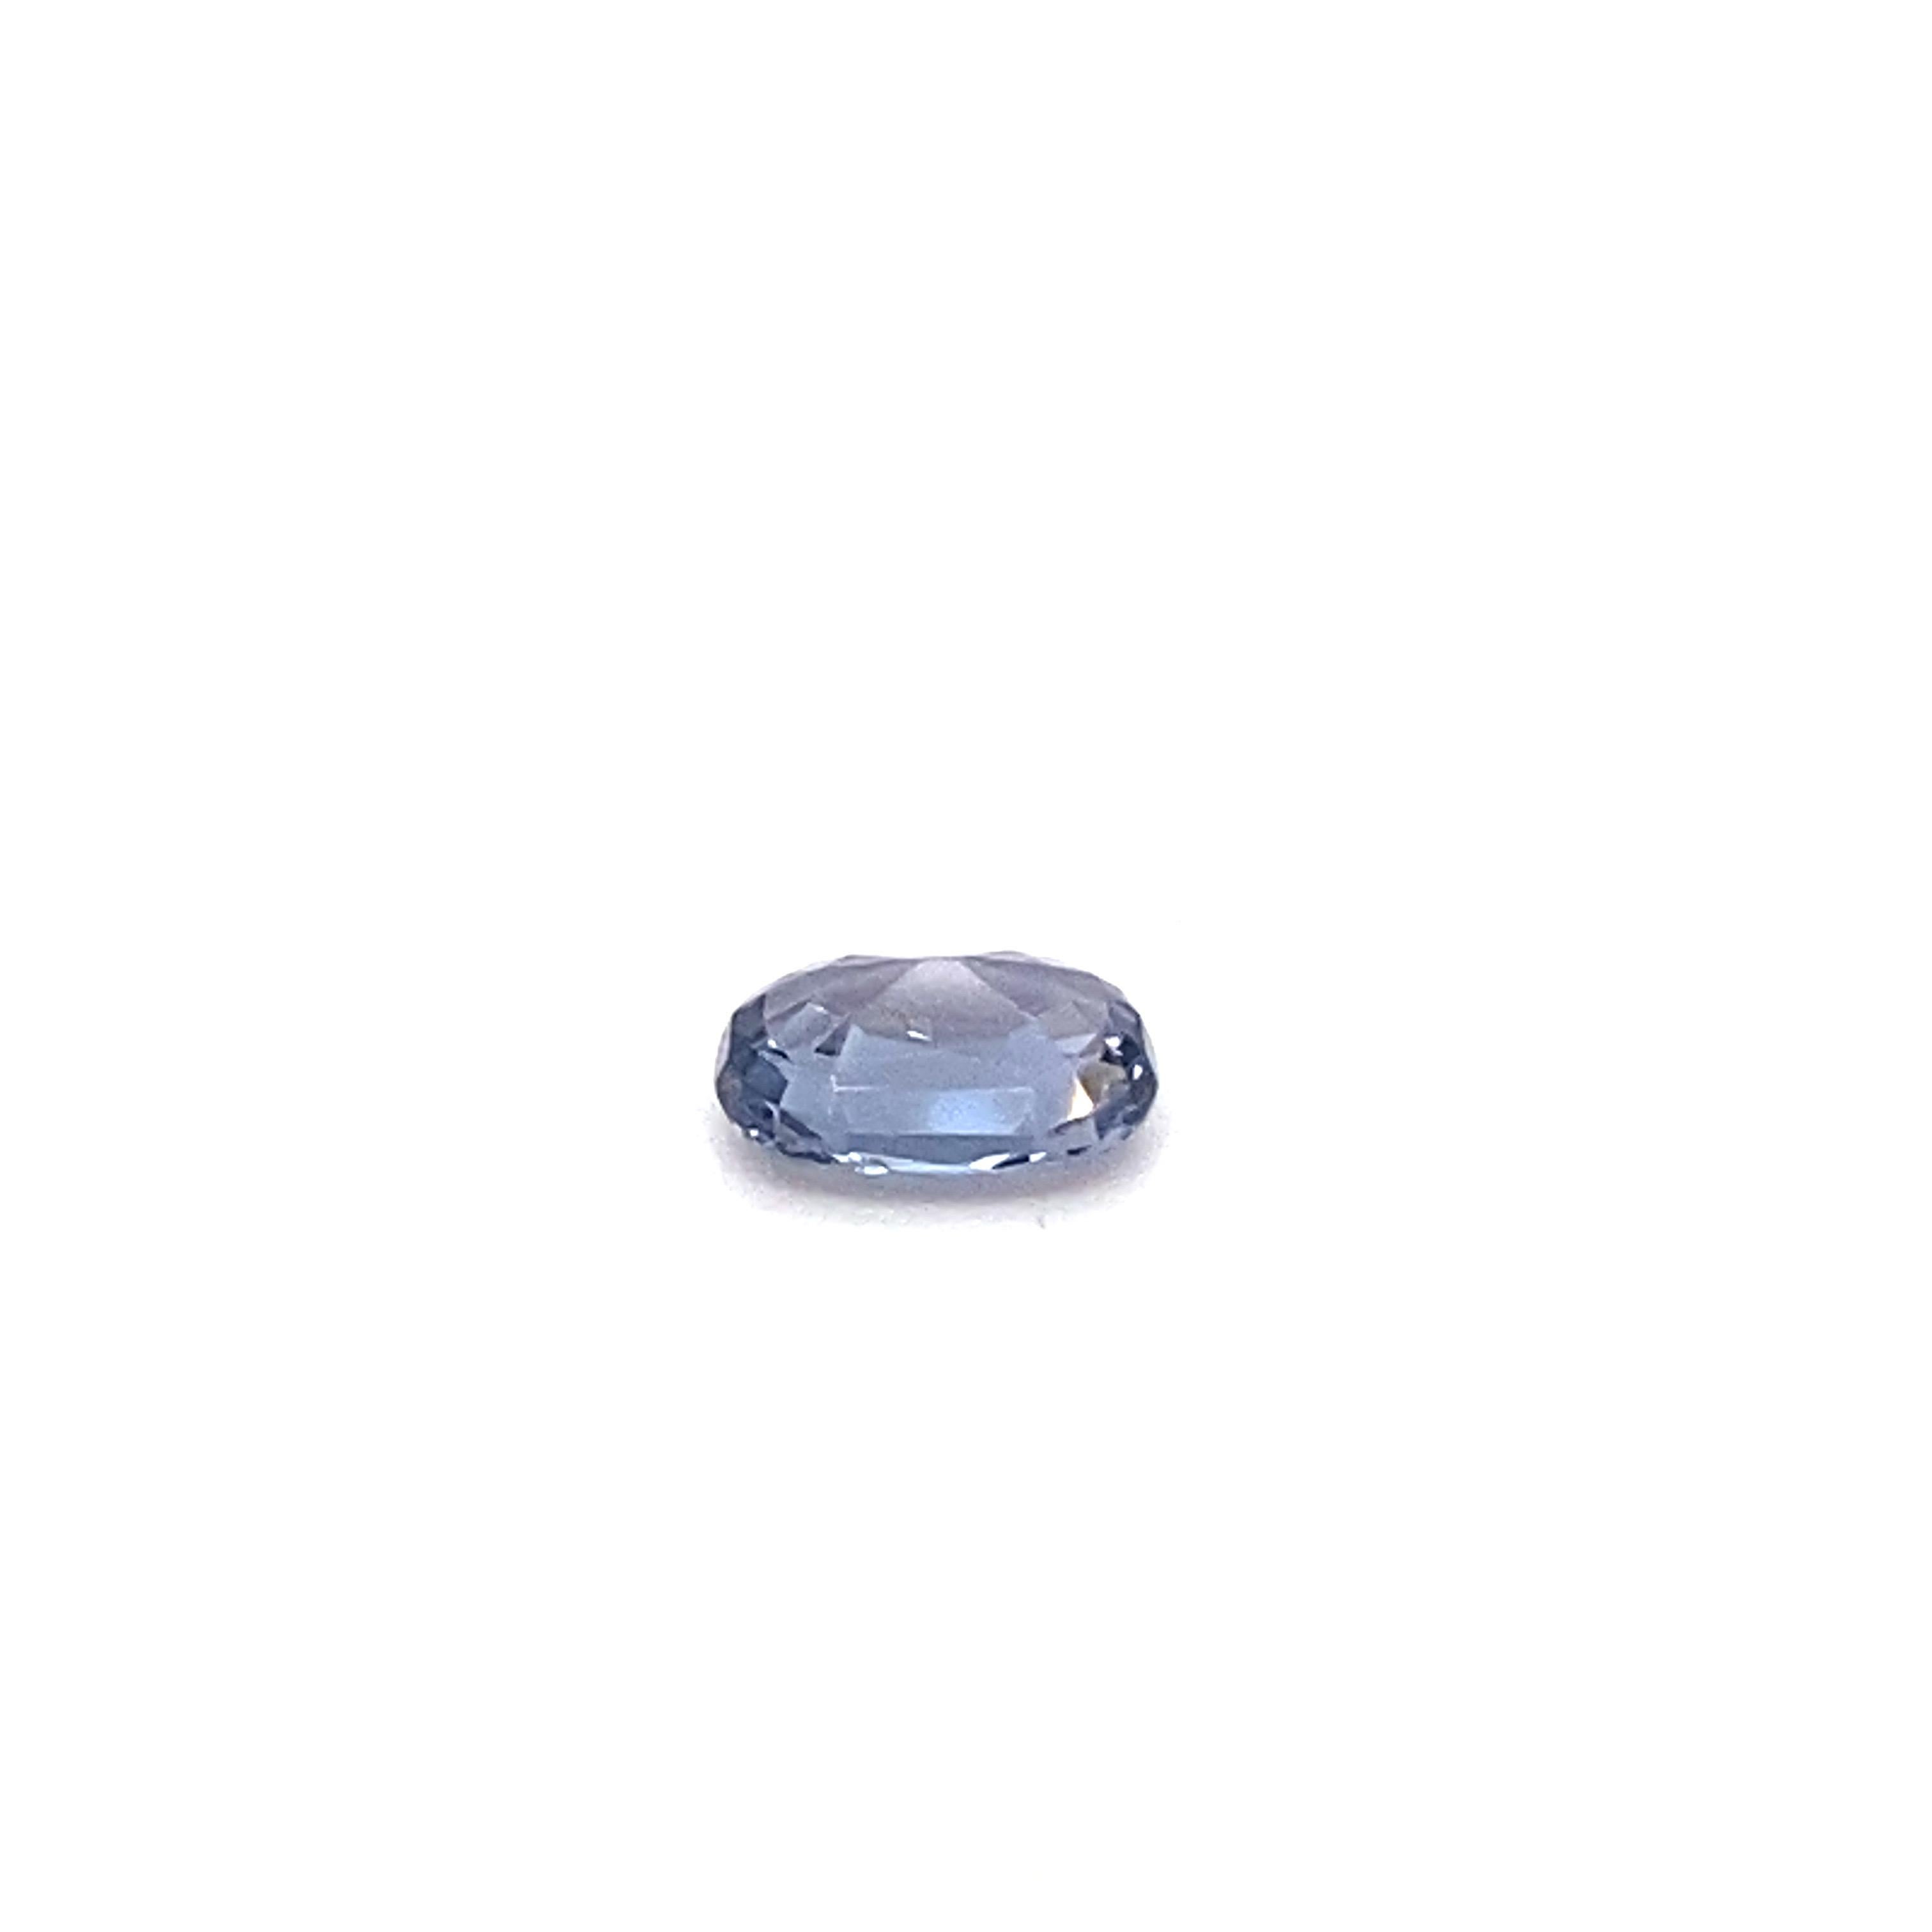 1.6 Carat Oval Shape Natural Violet Spinel Loose Gemstone For Sale 9